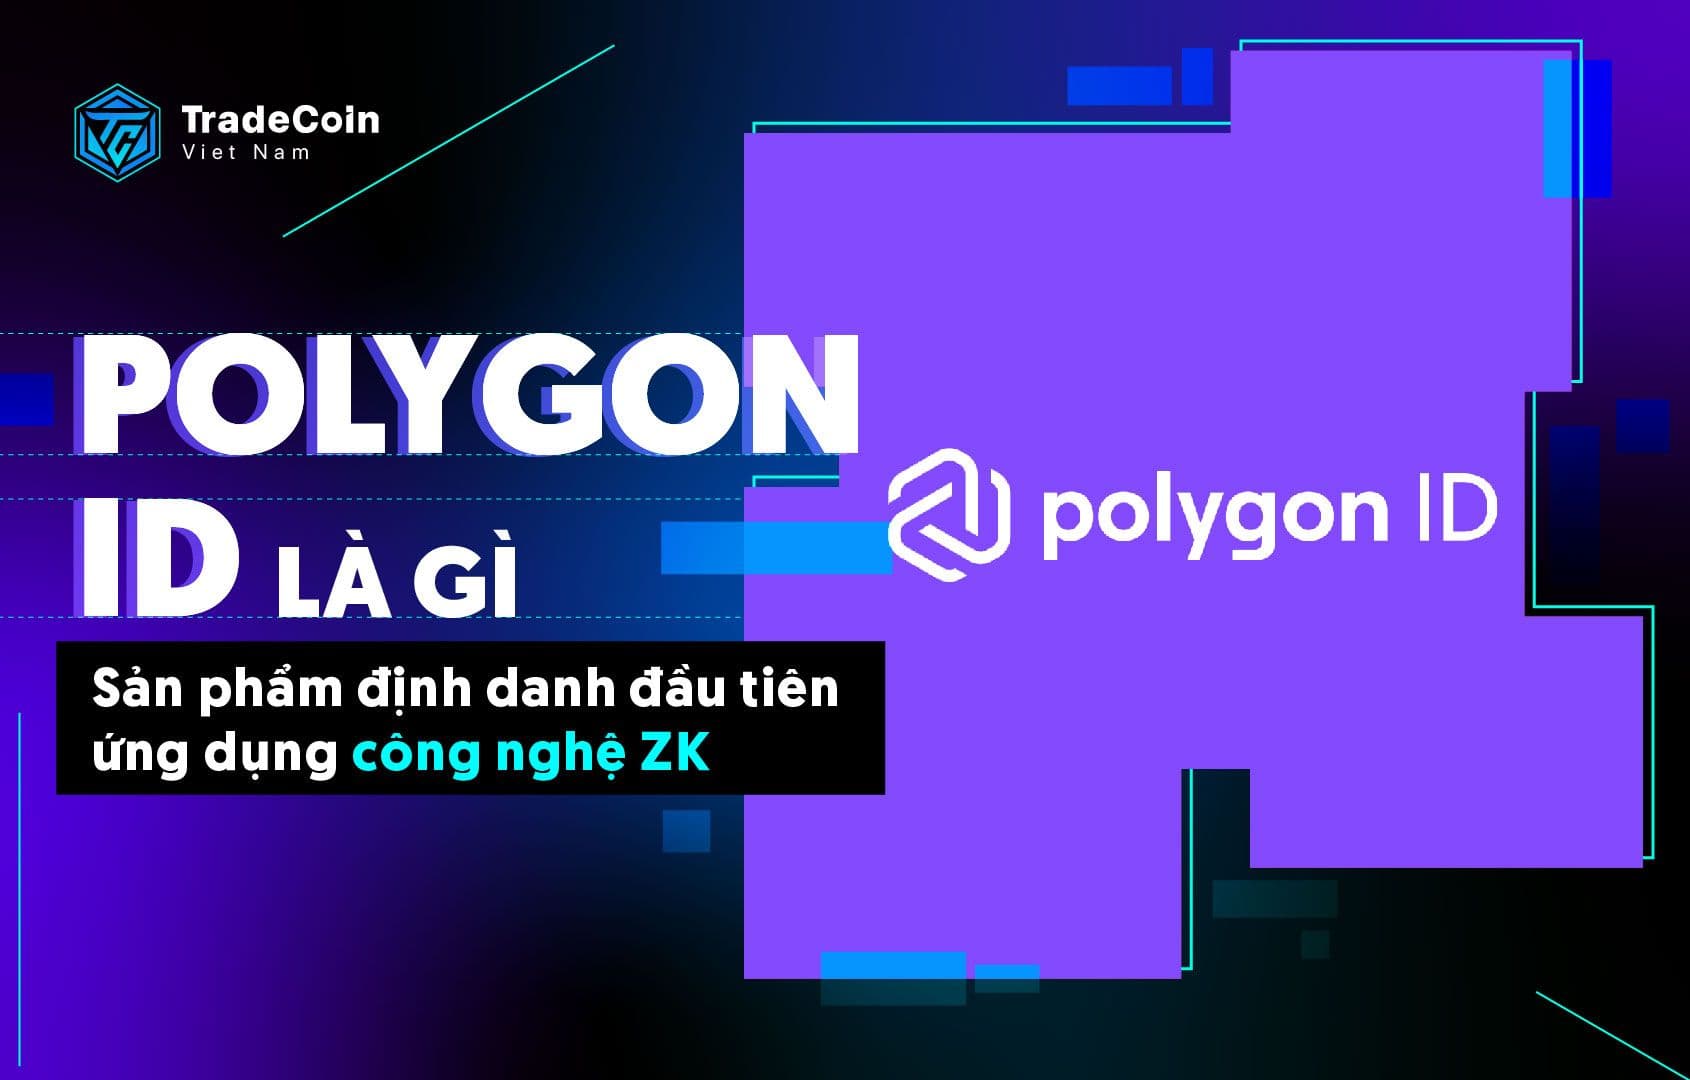 Polygon ID là gì? Sản phẩm định danh đầu tiên ứng dụng công nghệ ZK